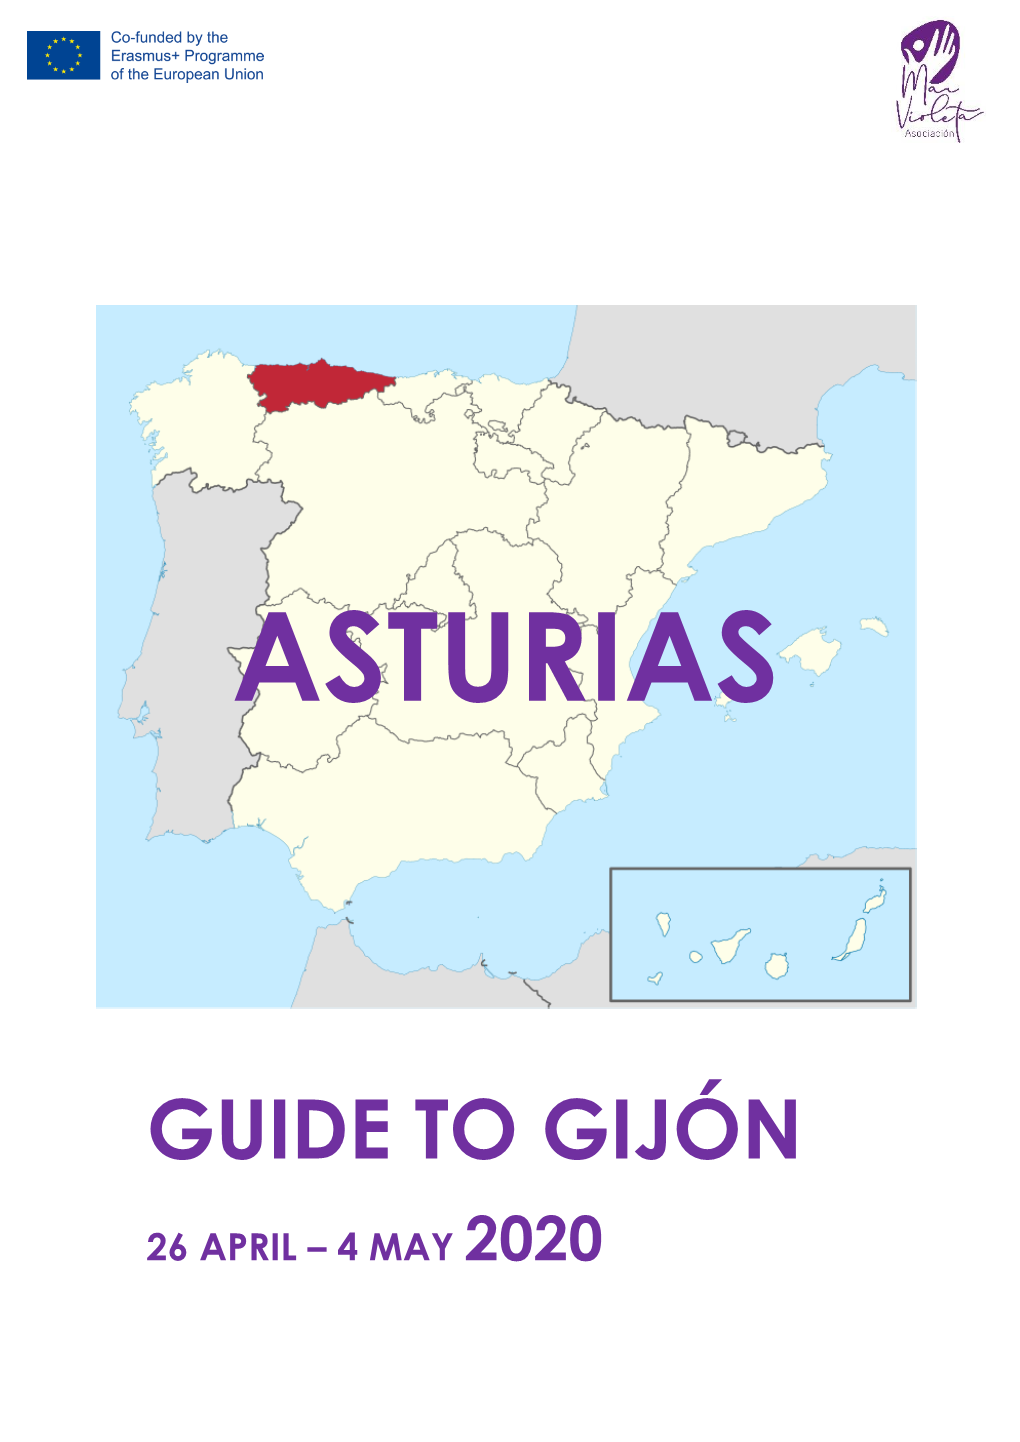 Guide to Gijón